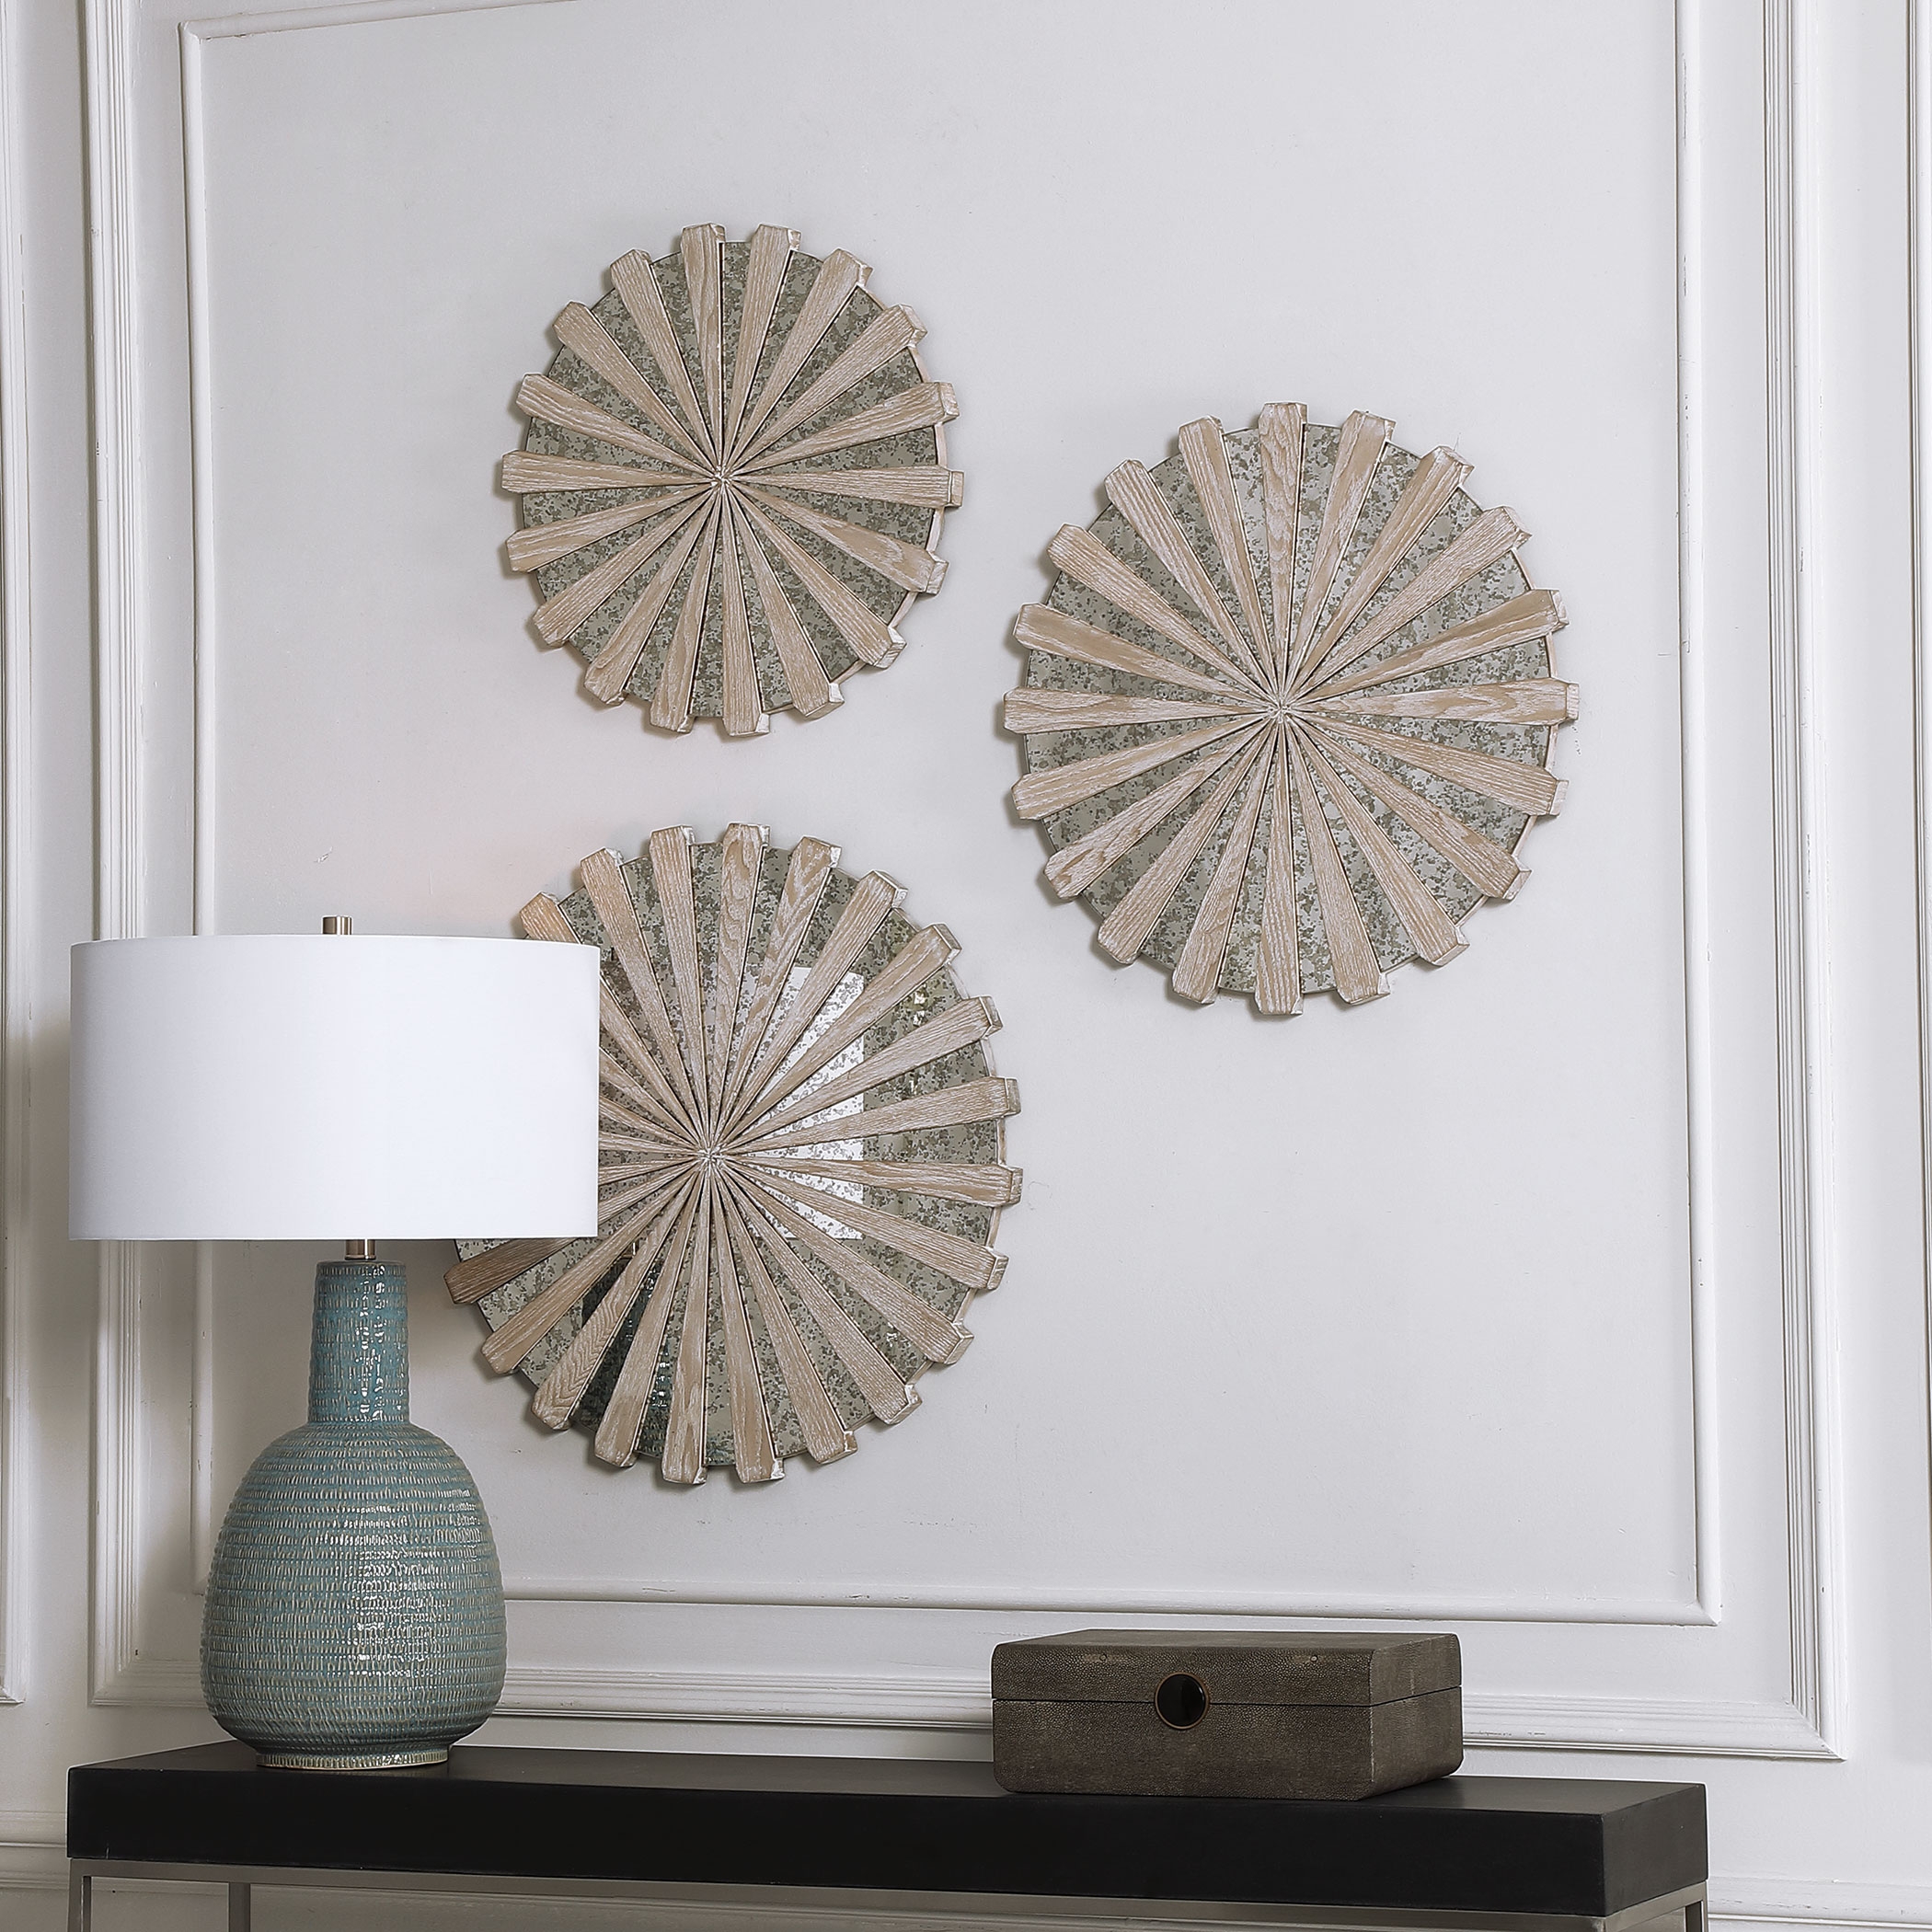 Daisies Mirrored Circular Wall Decor, S/3 - Image 1